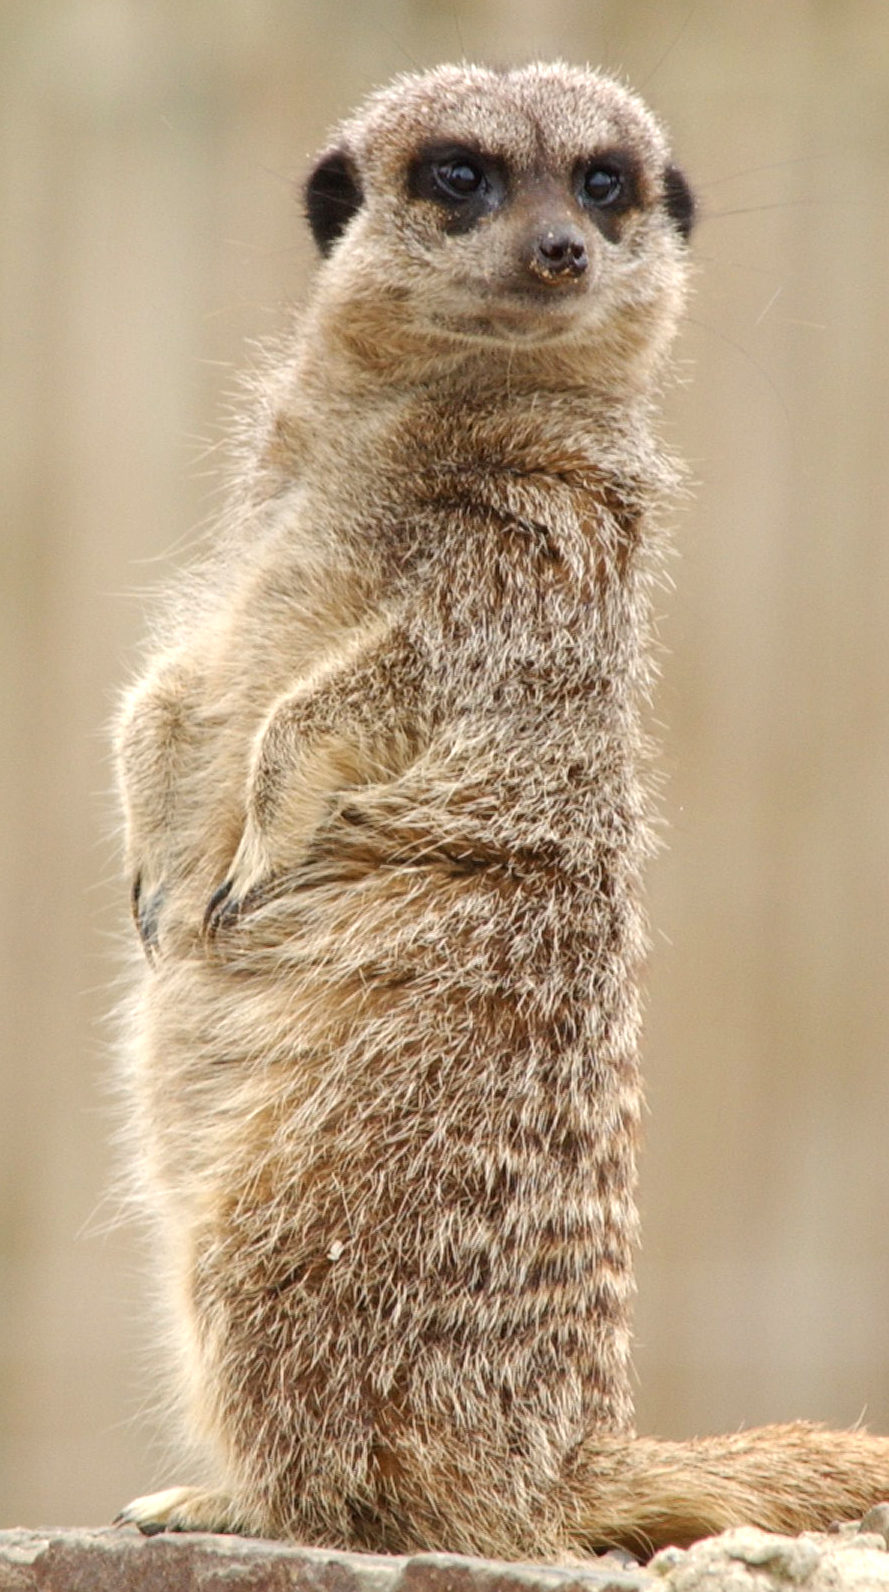 Adopt a Meerkat in the UK • Sponsor a Meerkat Gift Packs